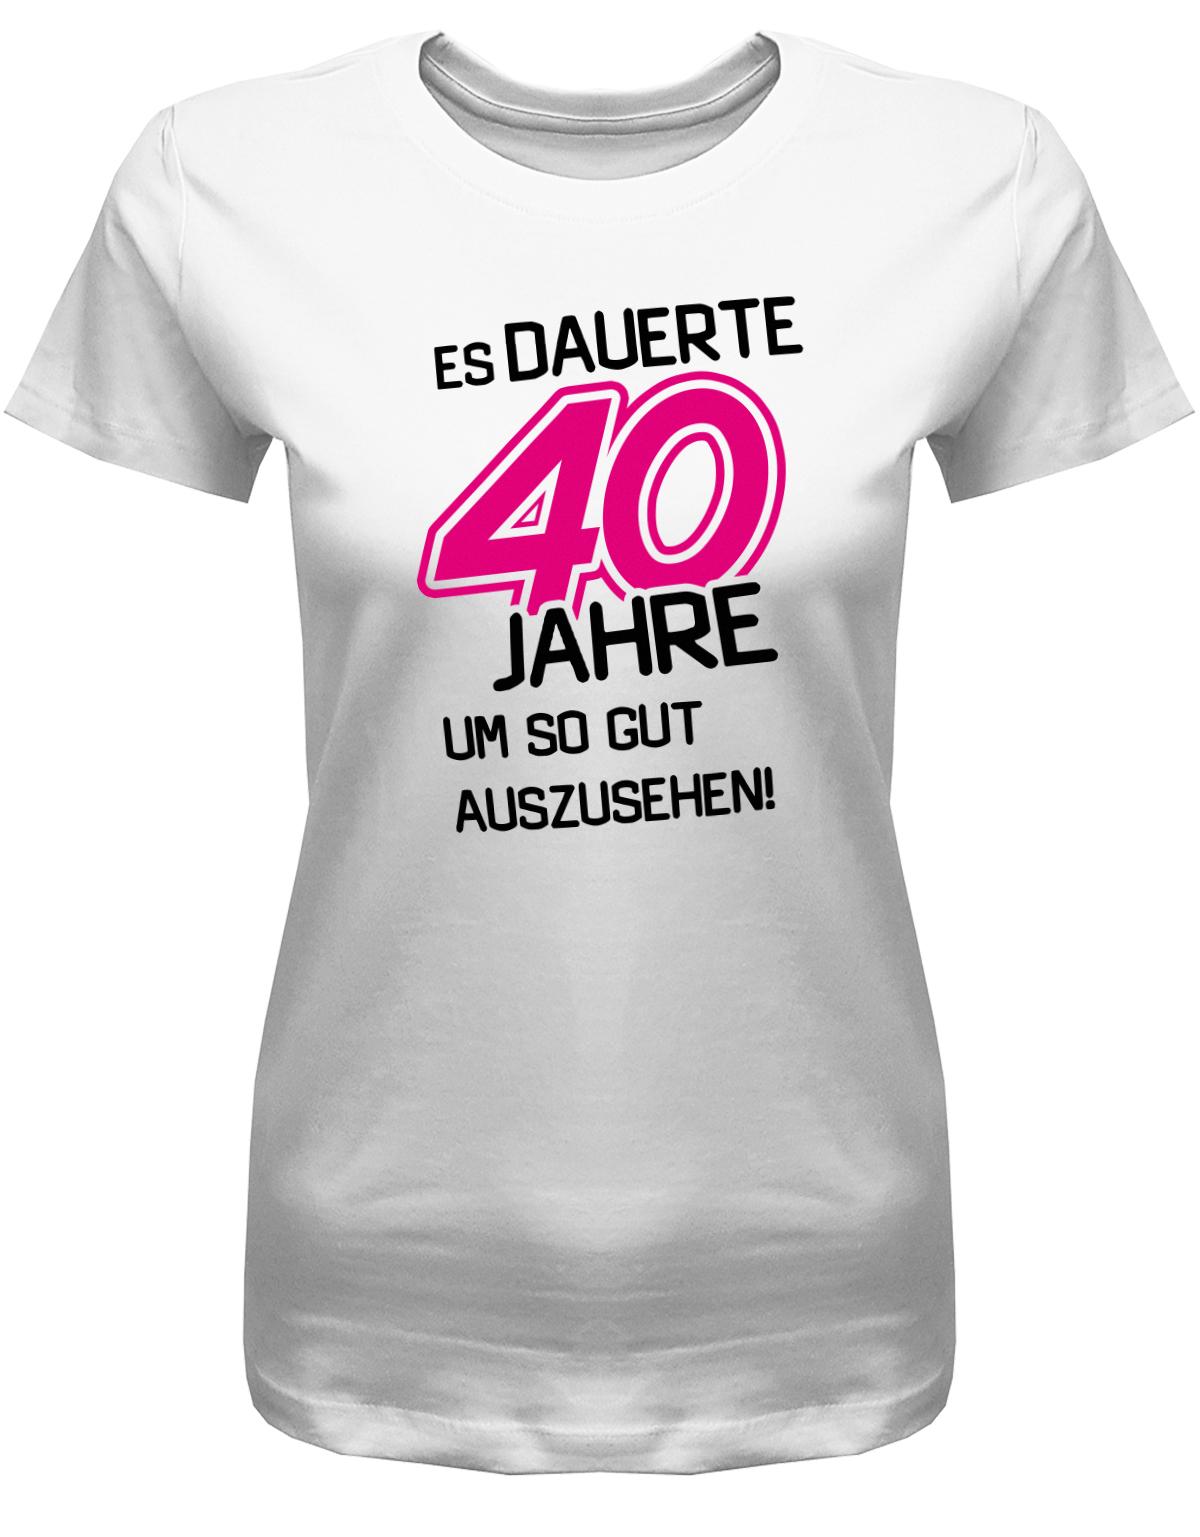 Lustiges T-Shirt zum 40 Geburtstag für die Frau Bedruckt mit Es dauerte 40 Jahre, um so gut auszusehen! Weiss